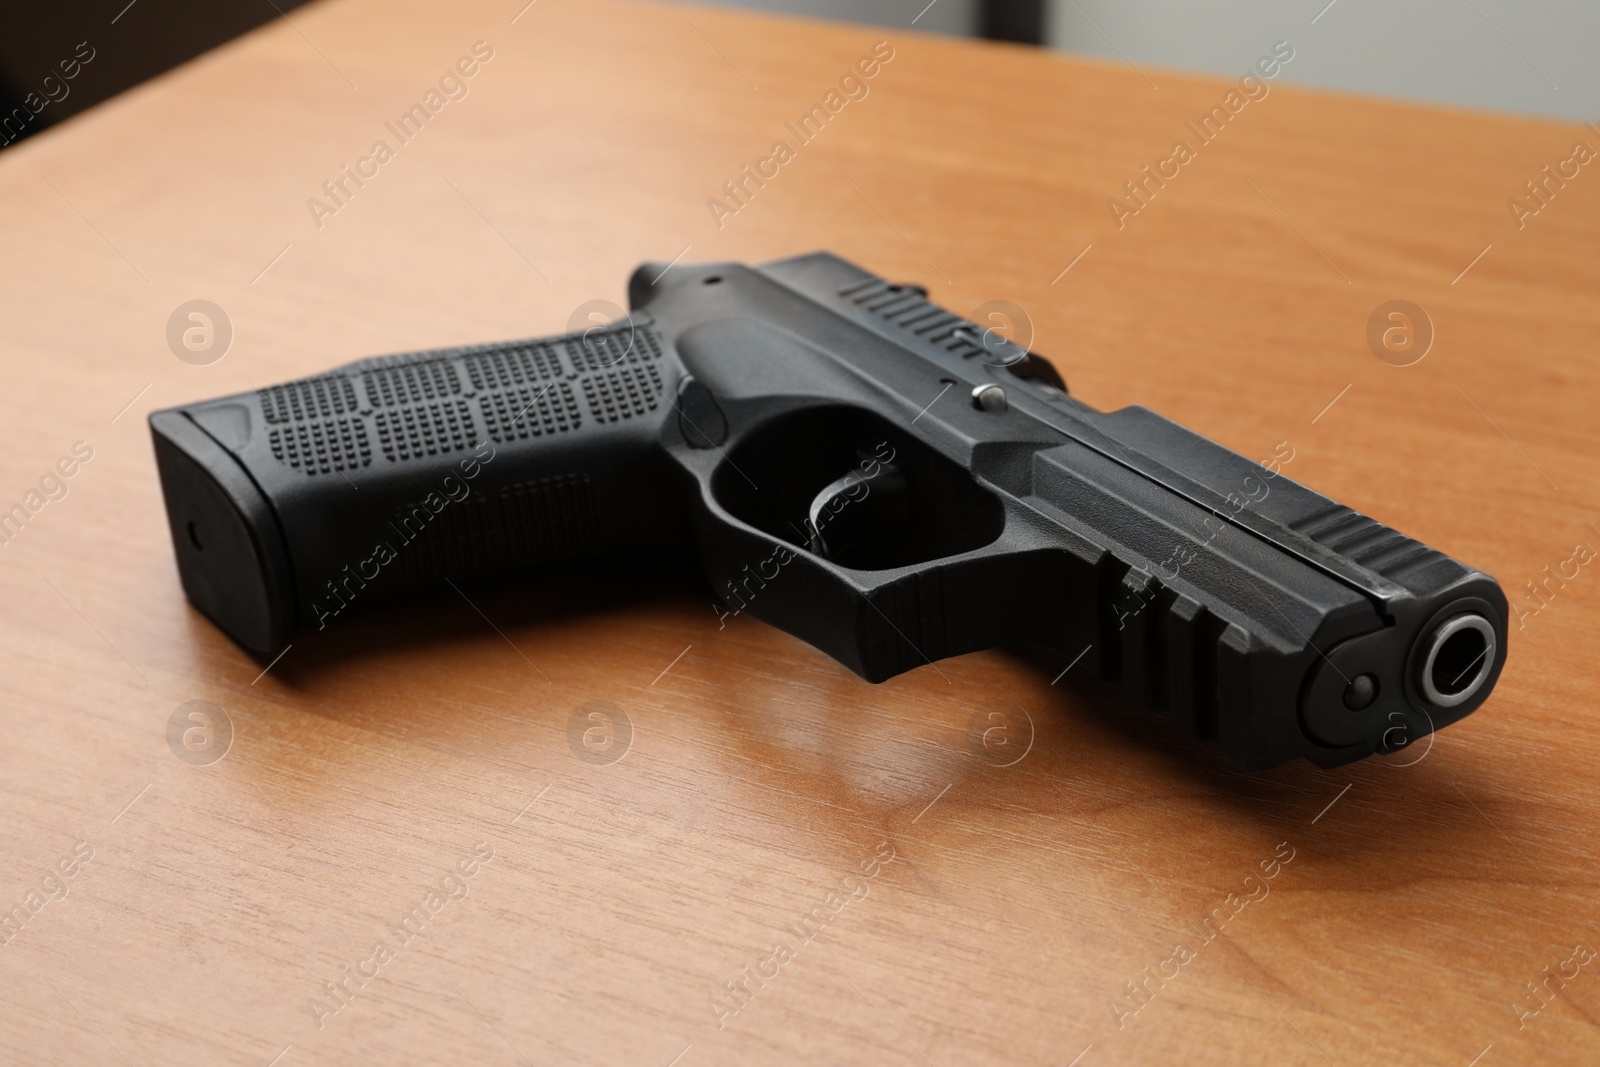 Photo of Semi-automatic pistol on wooden table. Standard handgun